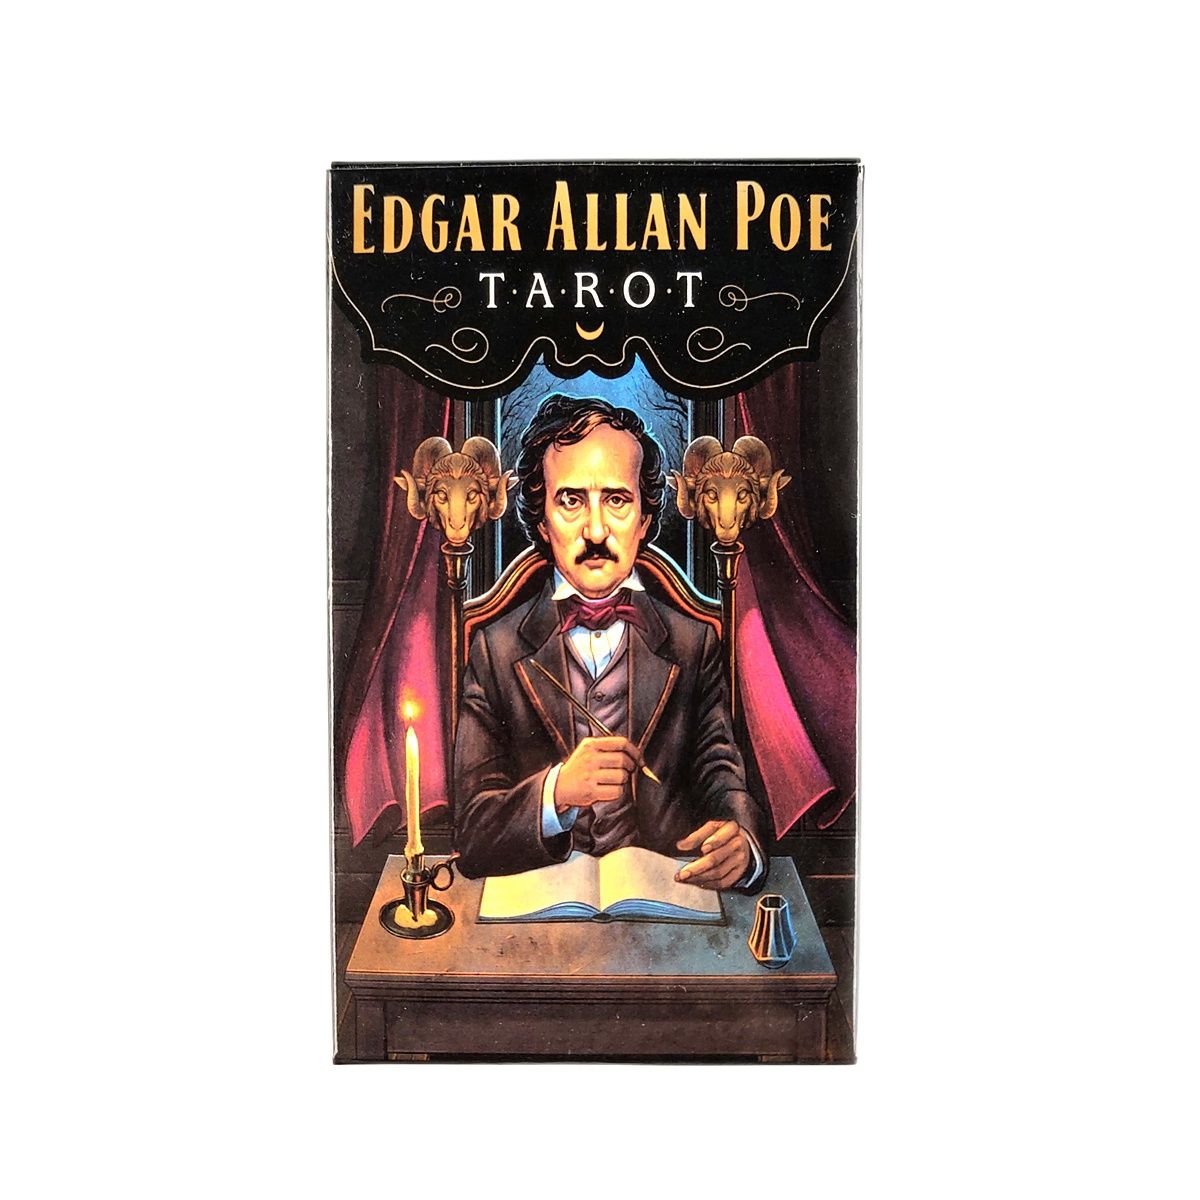 Bộ bài Edgar Allan Poe Tarot